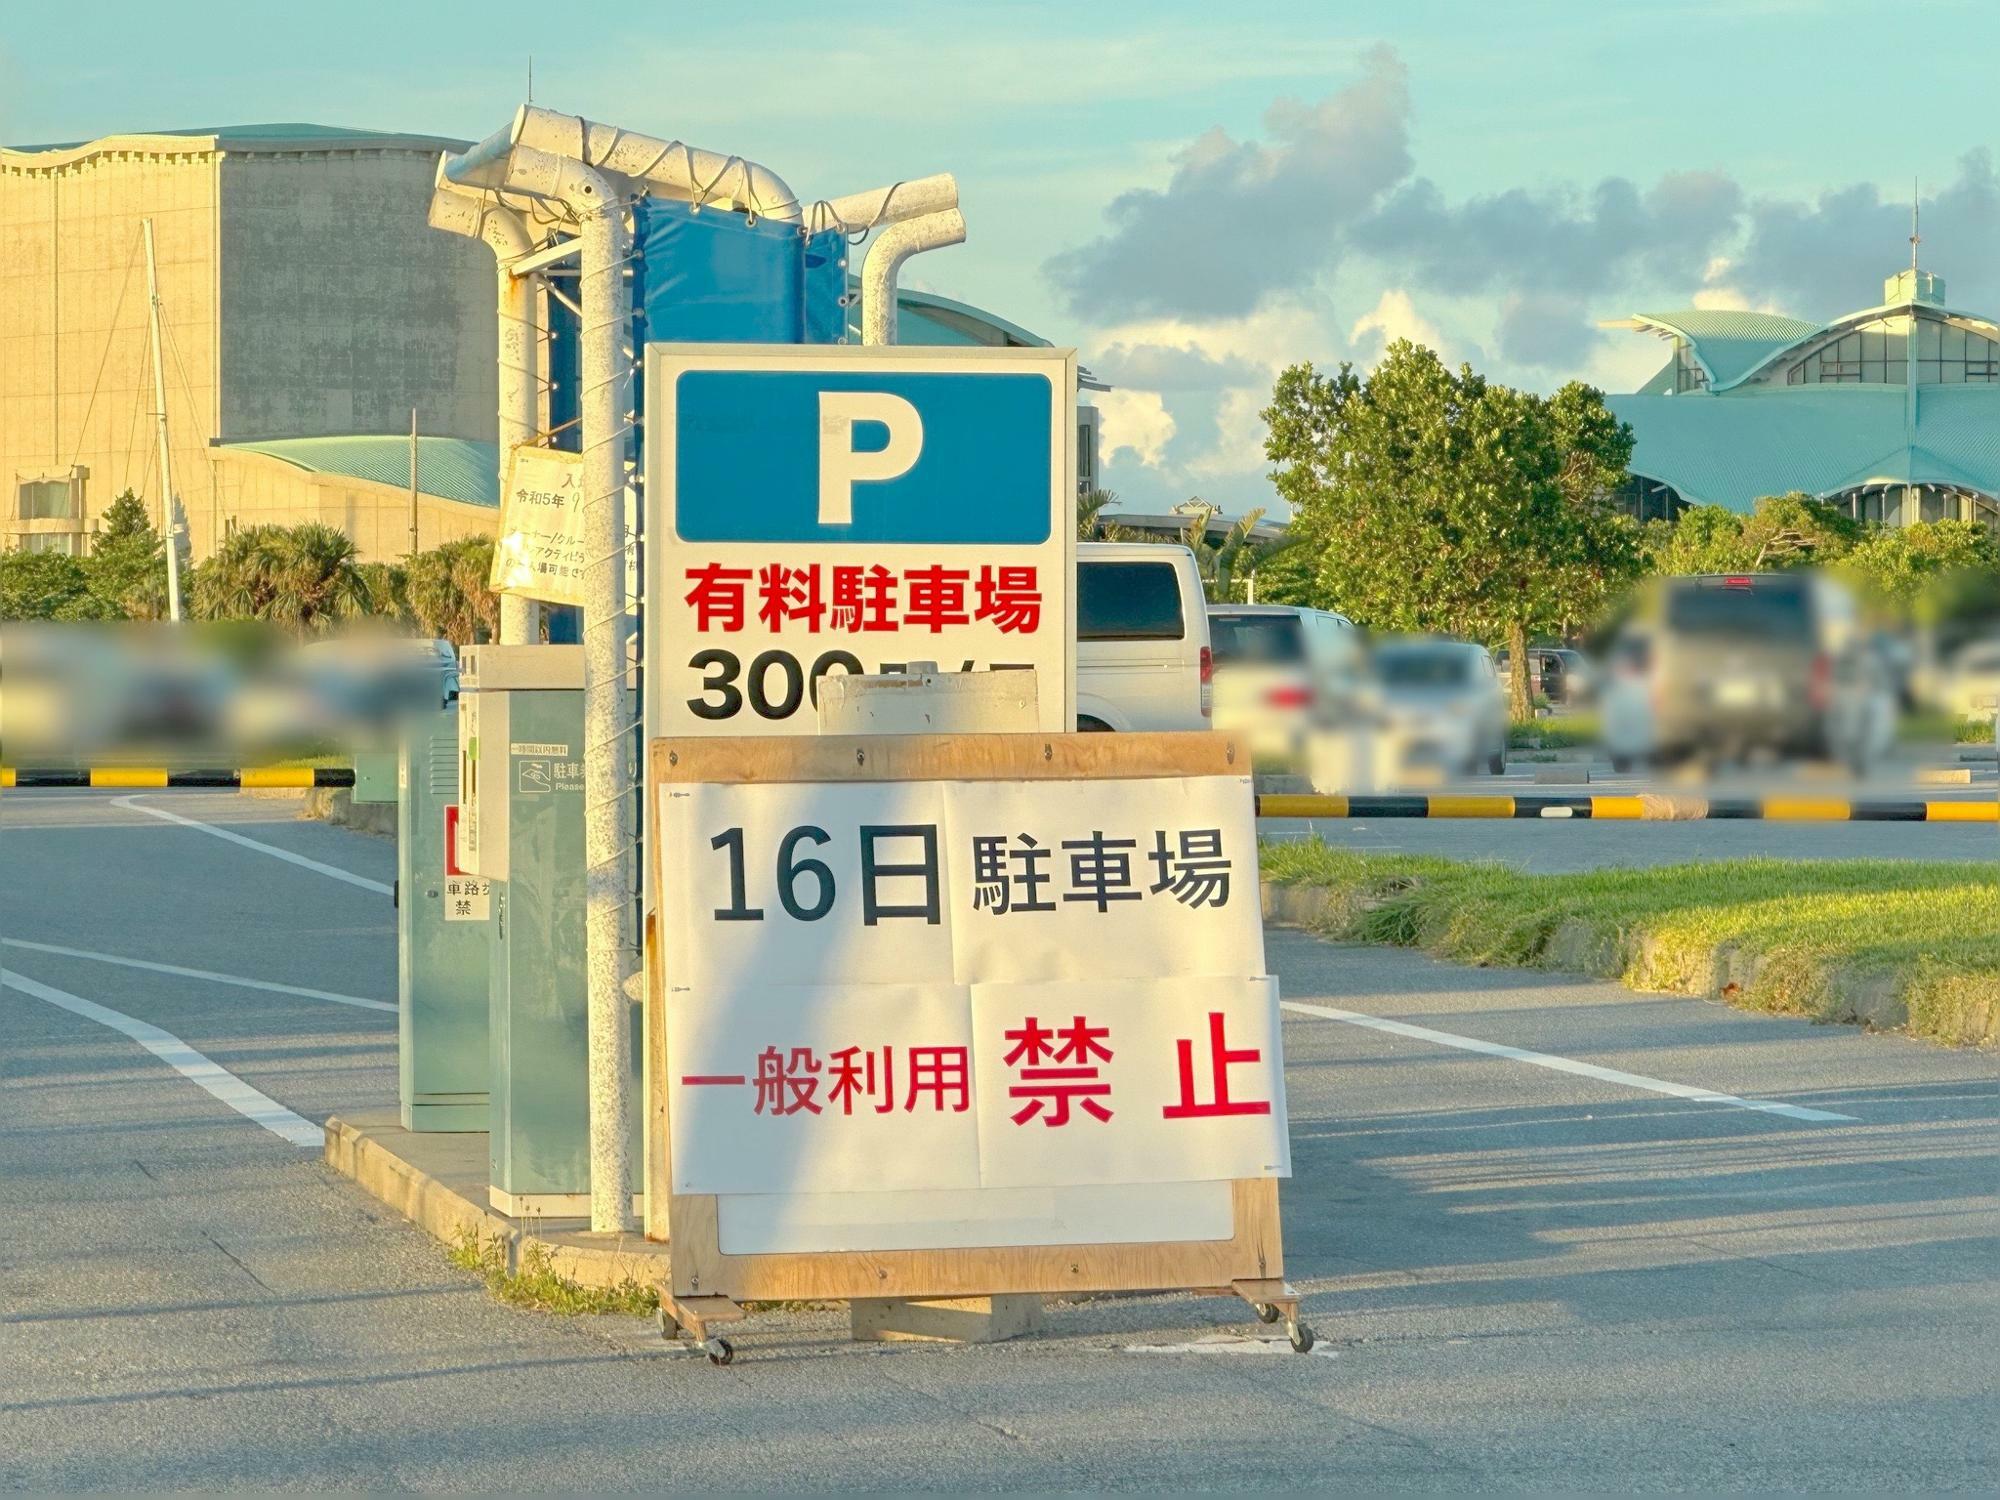 宜野湾港マリーナ隣の漁港駐車場の利用制限が案内されていました。